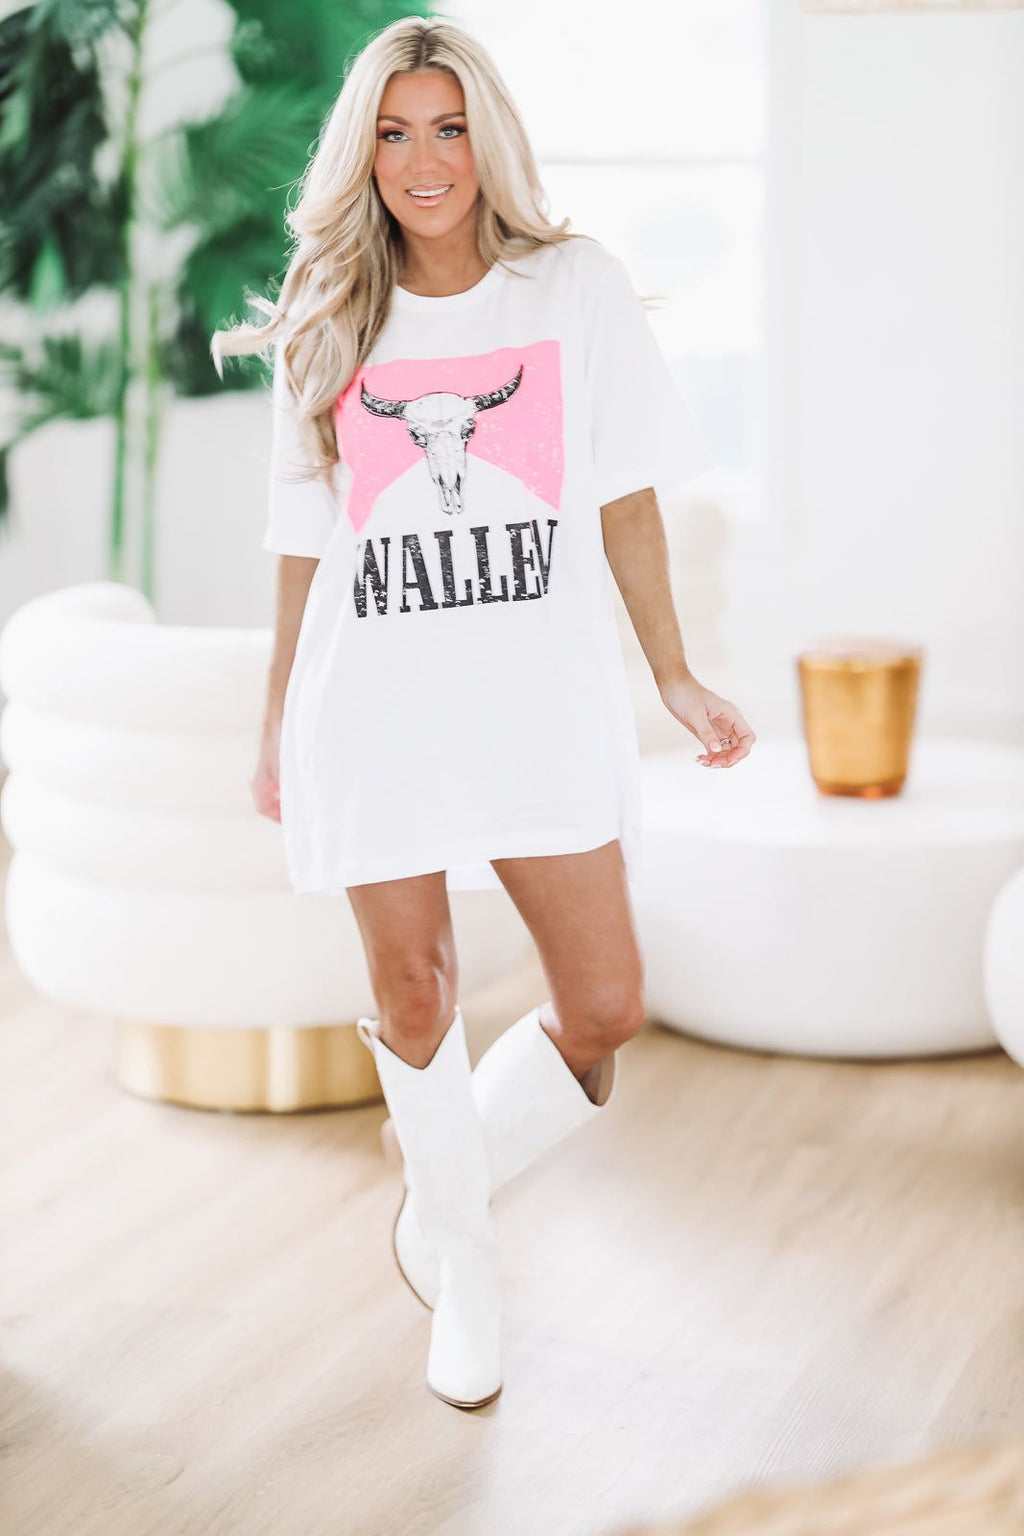 HAZEL & OLIVE Wallen T - T Shirt Dress - White and Dark Pink - Preorder